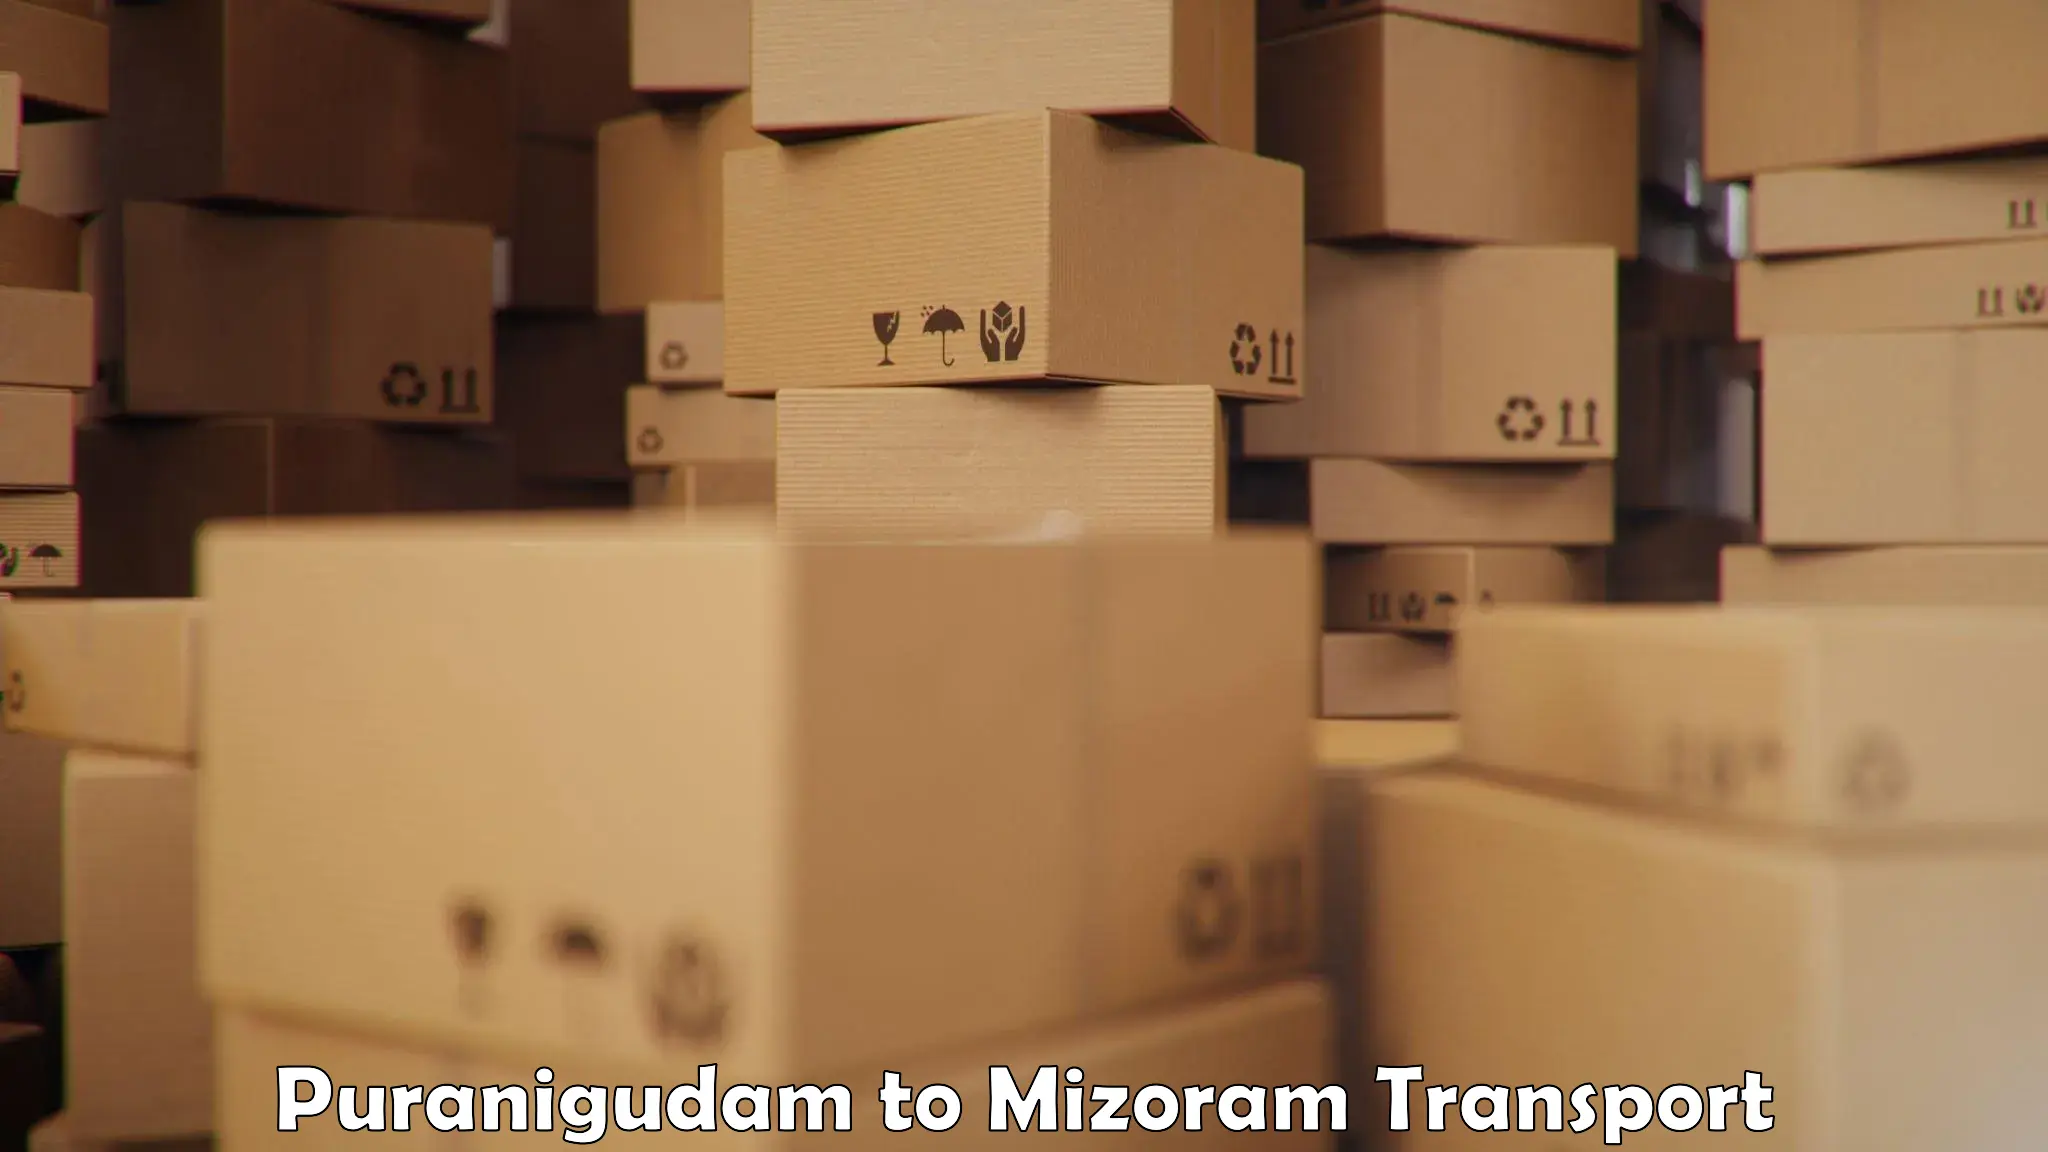 Pick up transport service Puranigudam to Mizoram